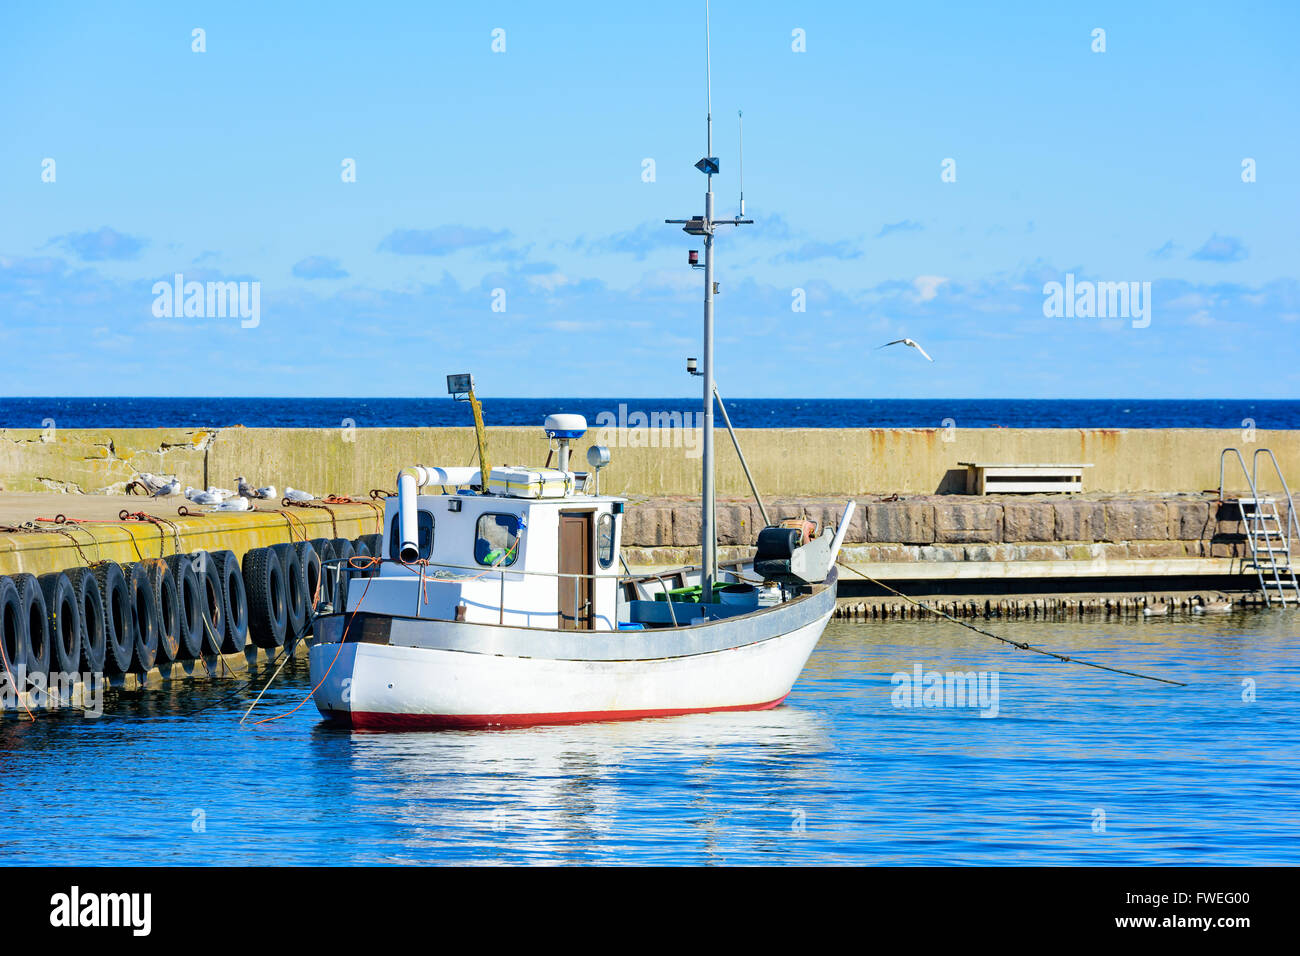 Piccola pesca bianca barca ormeggiata presso il molo di pietra nel porto. I gabbiani sedersi accanto ad esso sul molo. Bene, soleggiato e molto l Foto Stock